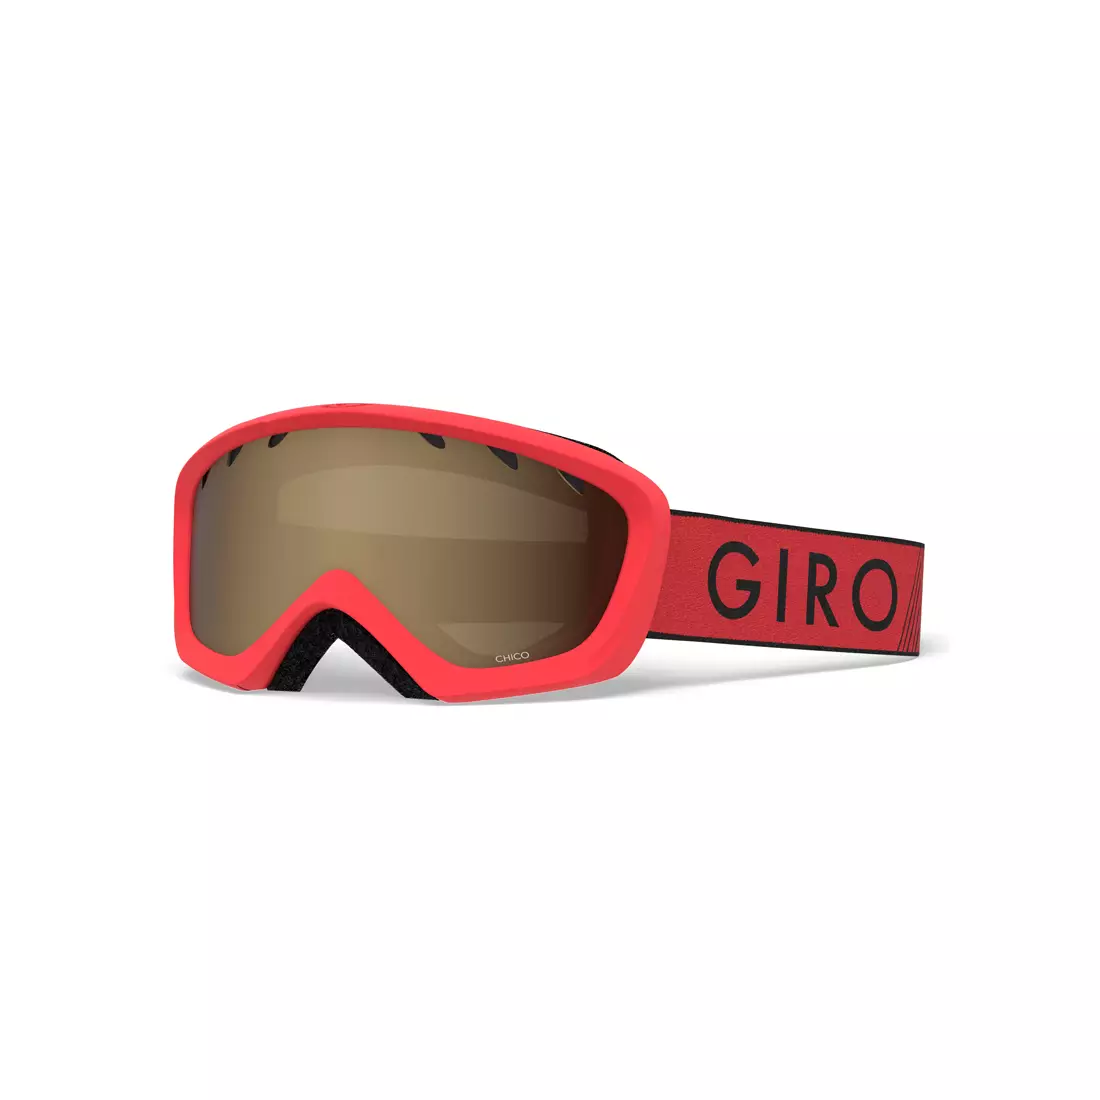 Juniorské lyžařské / snowboardové brýle CHICO RED BLACK ZOOM GR-7083076